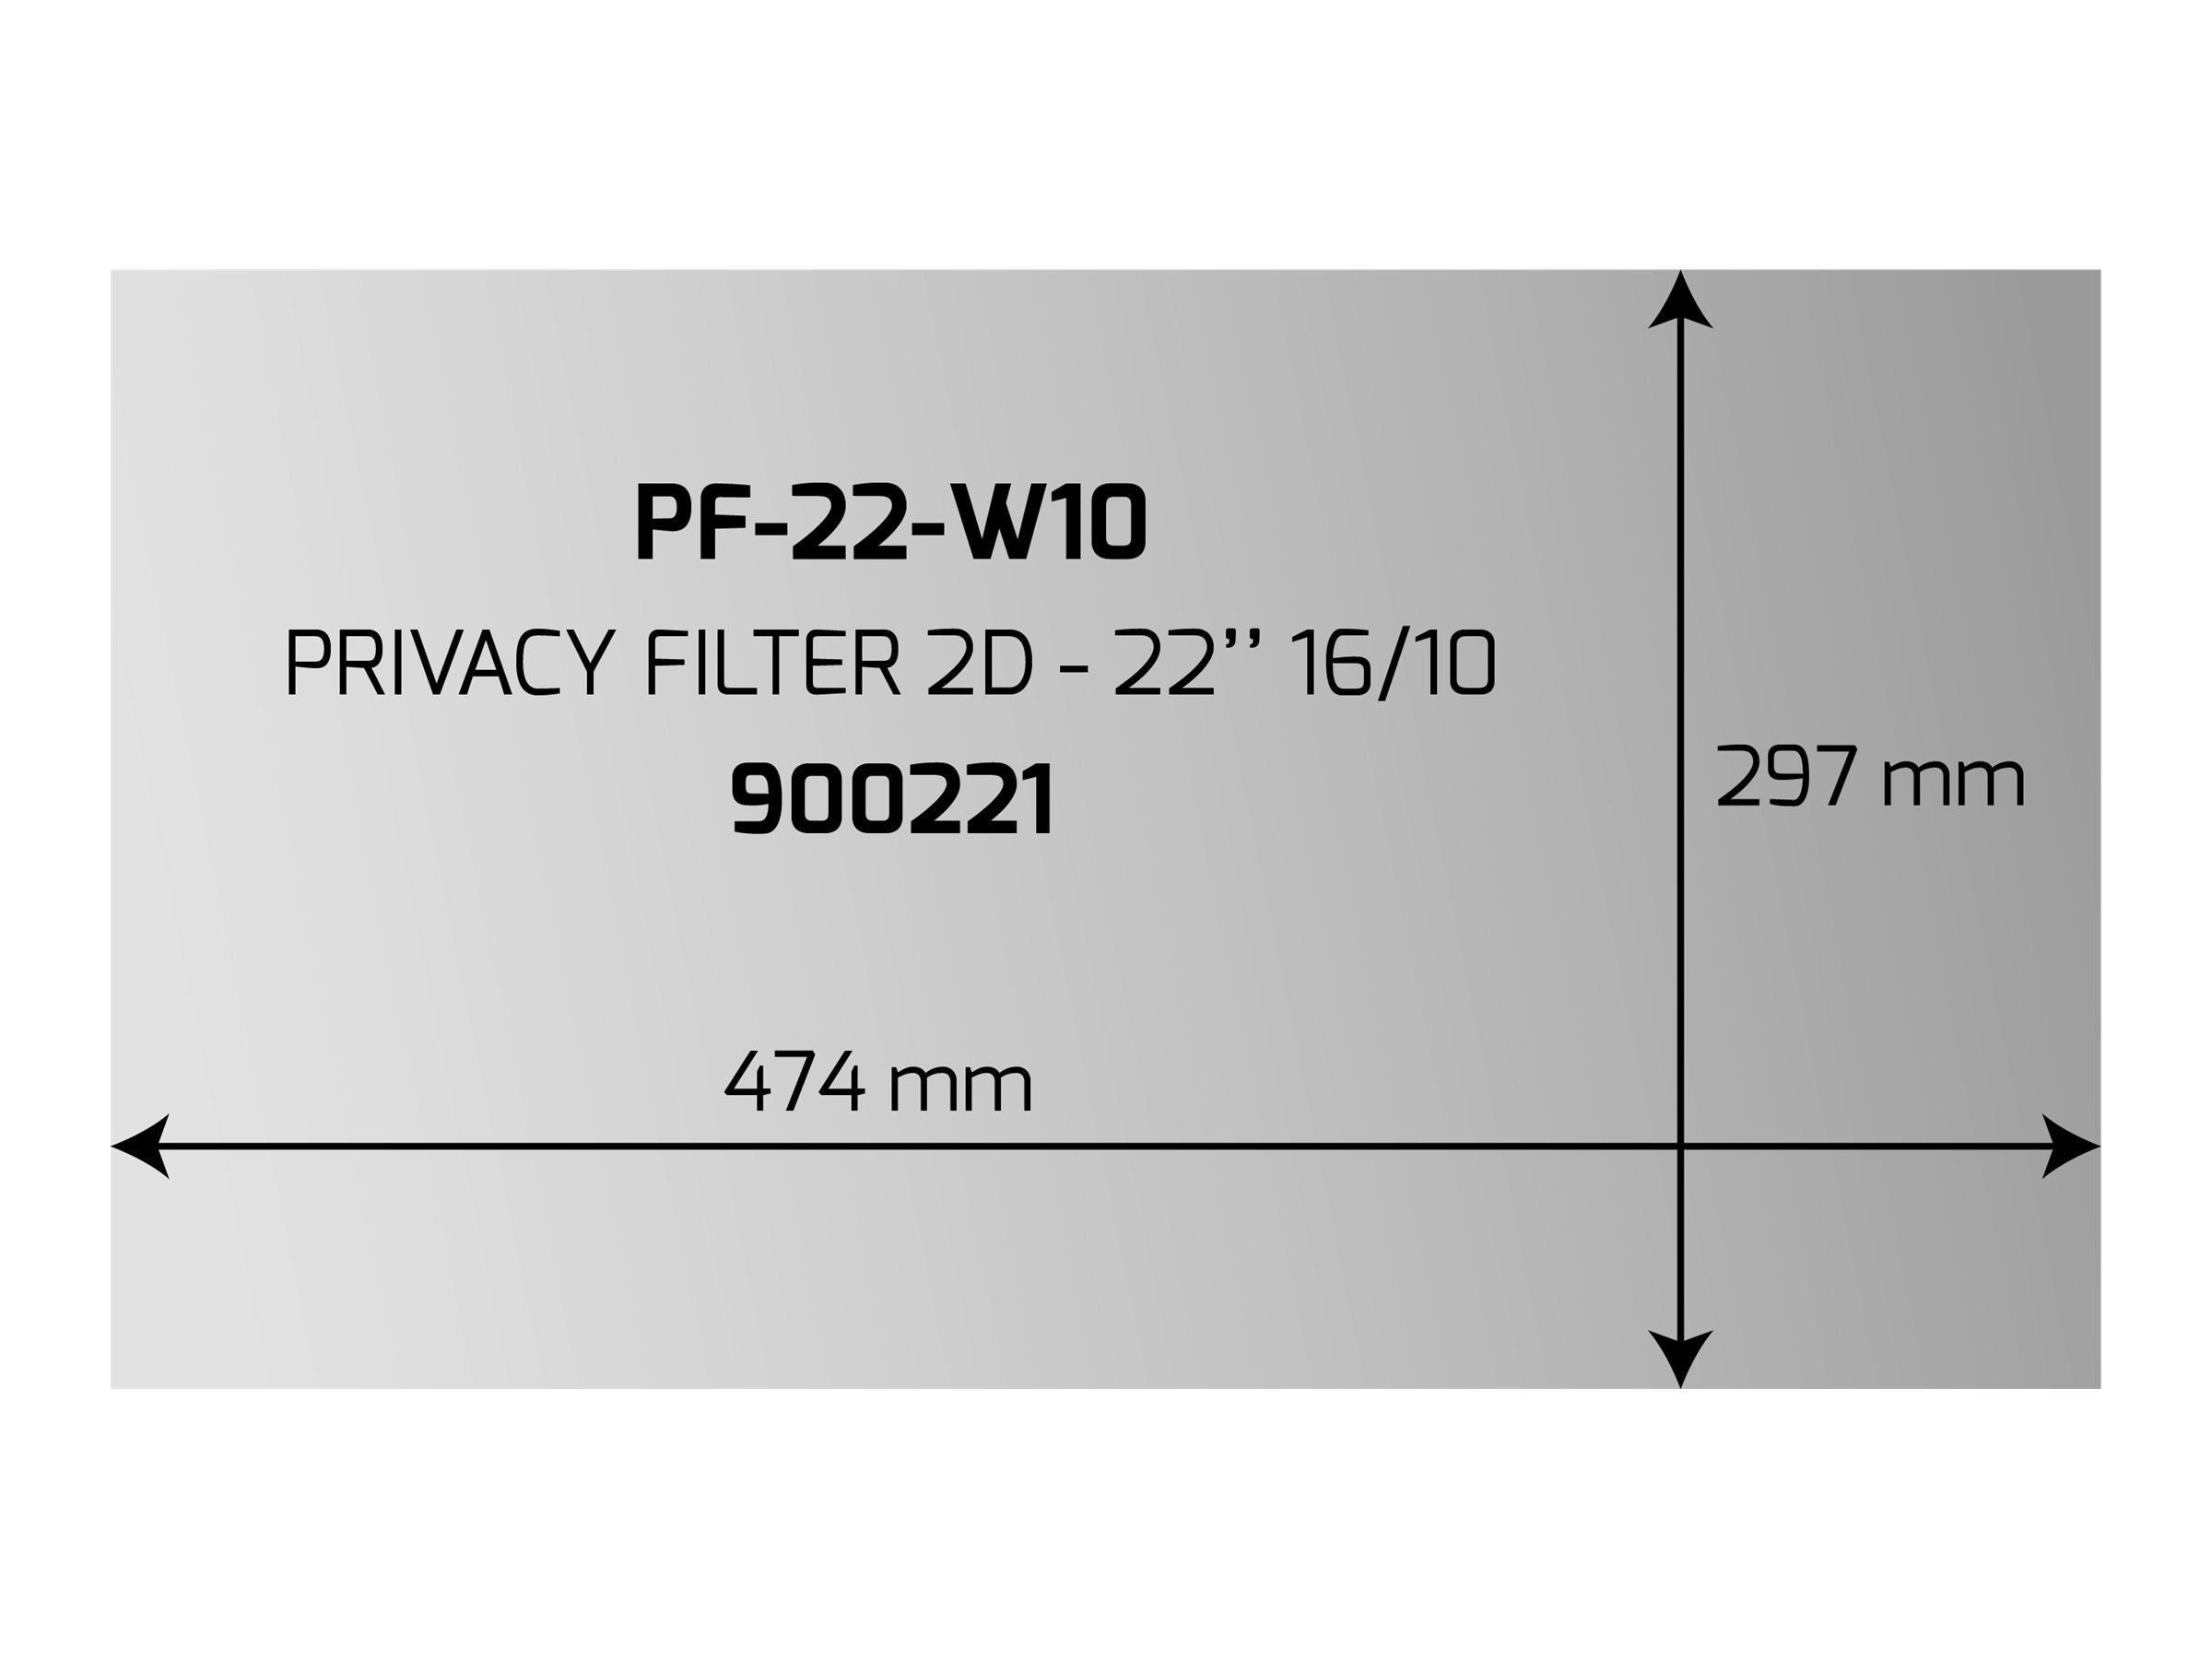 PORT Professional - Filtre anti-indiscrétion - Largeur 22,1" - noir opaque - 900221 - Accessoires pour écran